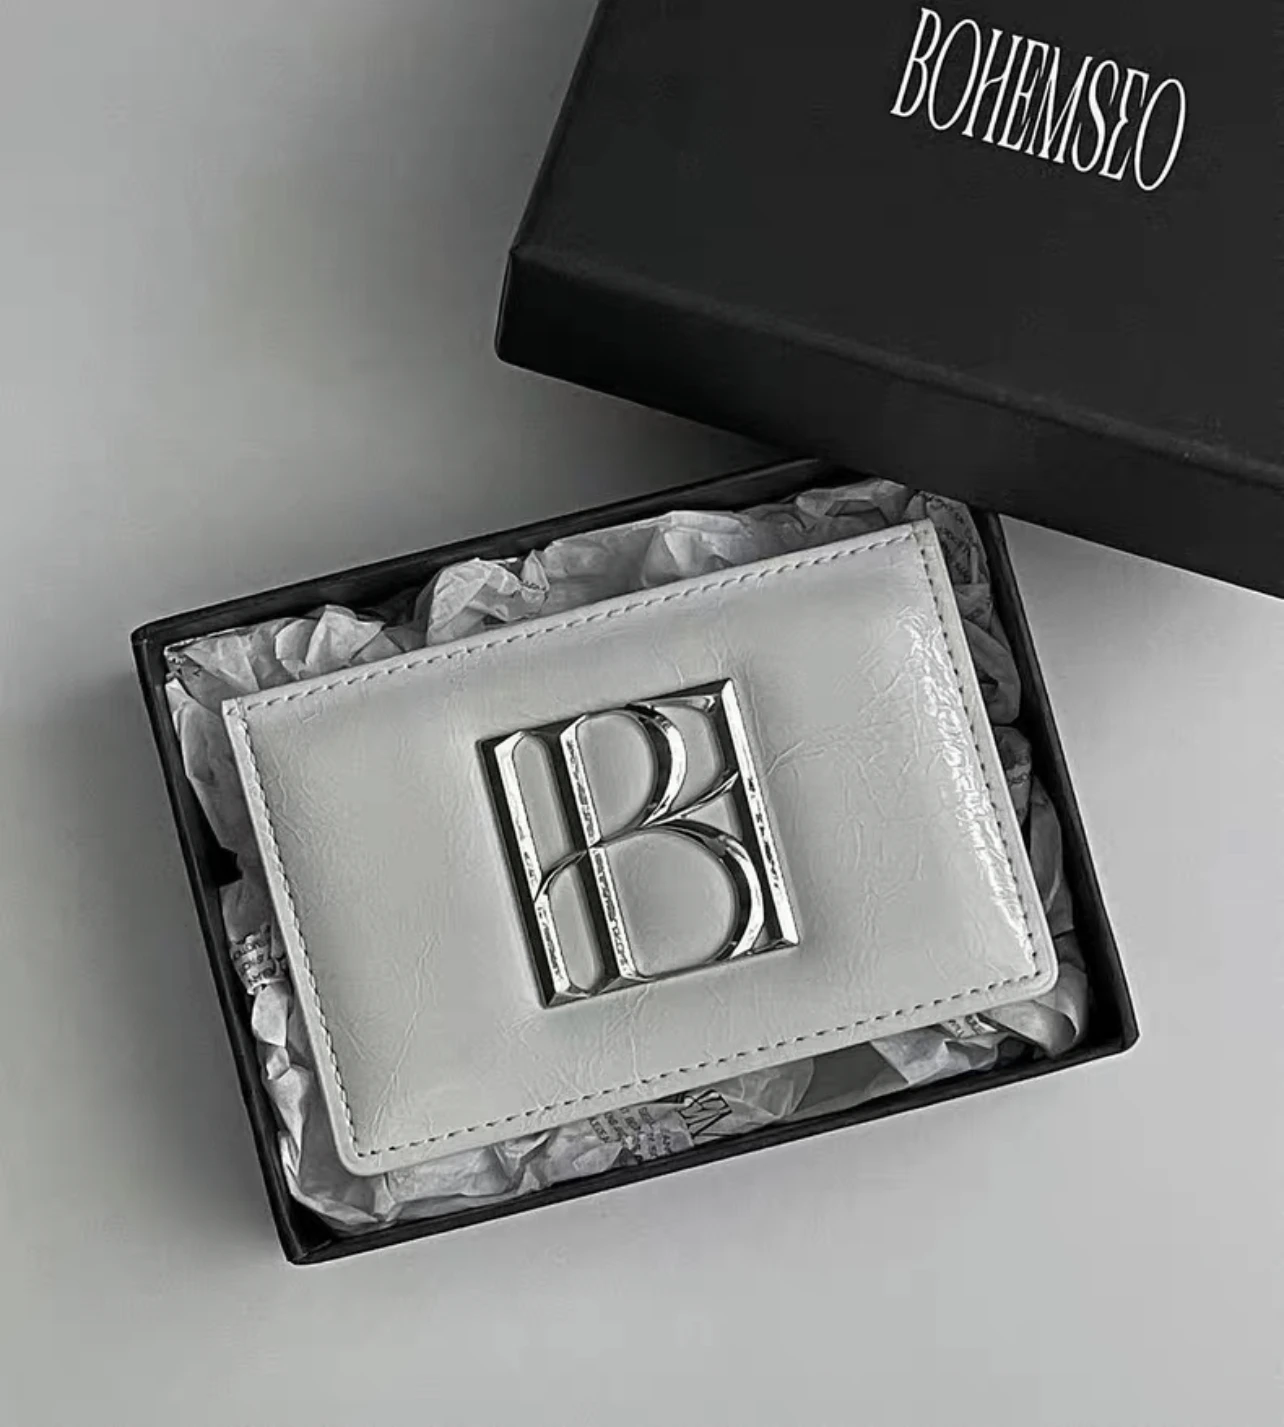 Business Card Holder Beige  Mens Dior Wallets Card Holders